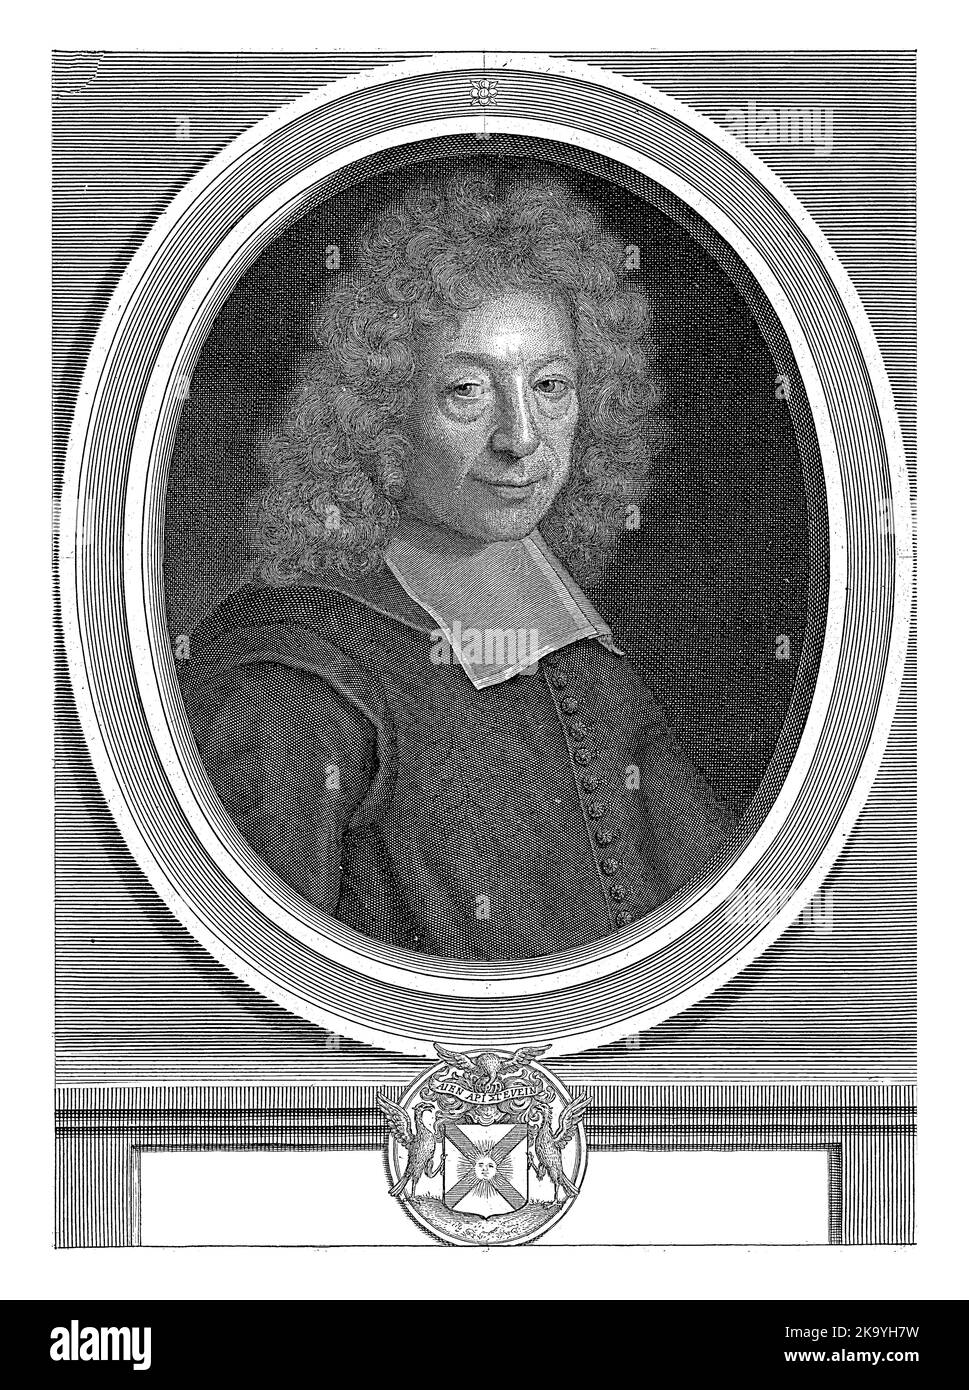 Portrait de Gilles Menage, Pieter van Schuppen, d'après Roger de piles, 1698 Banque D'Images